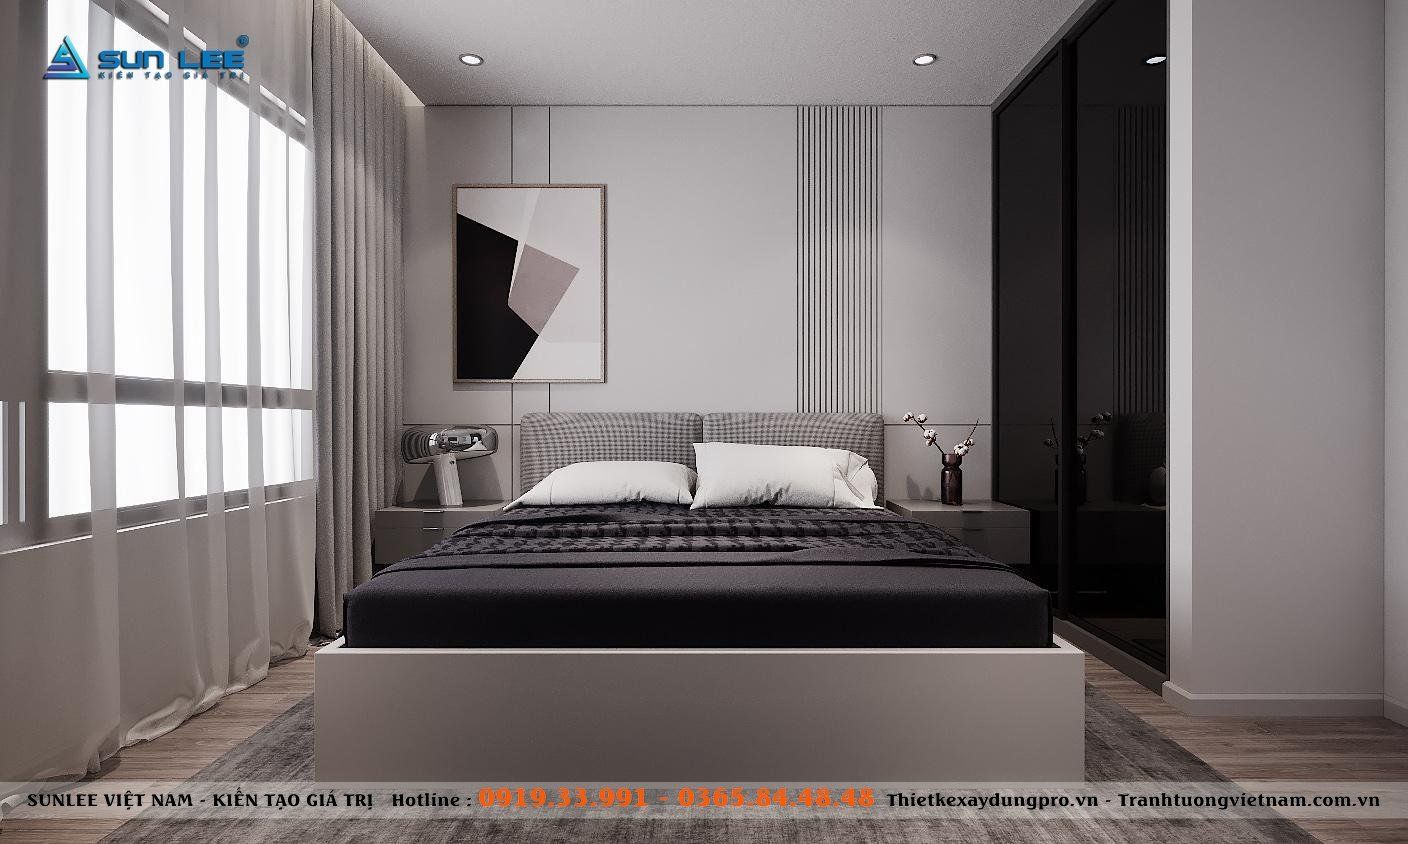 Phòng ngủ master được bố trí với vật dụng cơ bản là giường và tủ